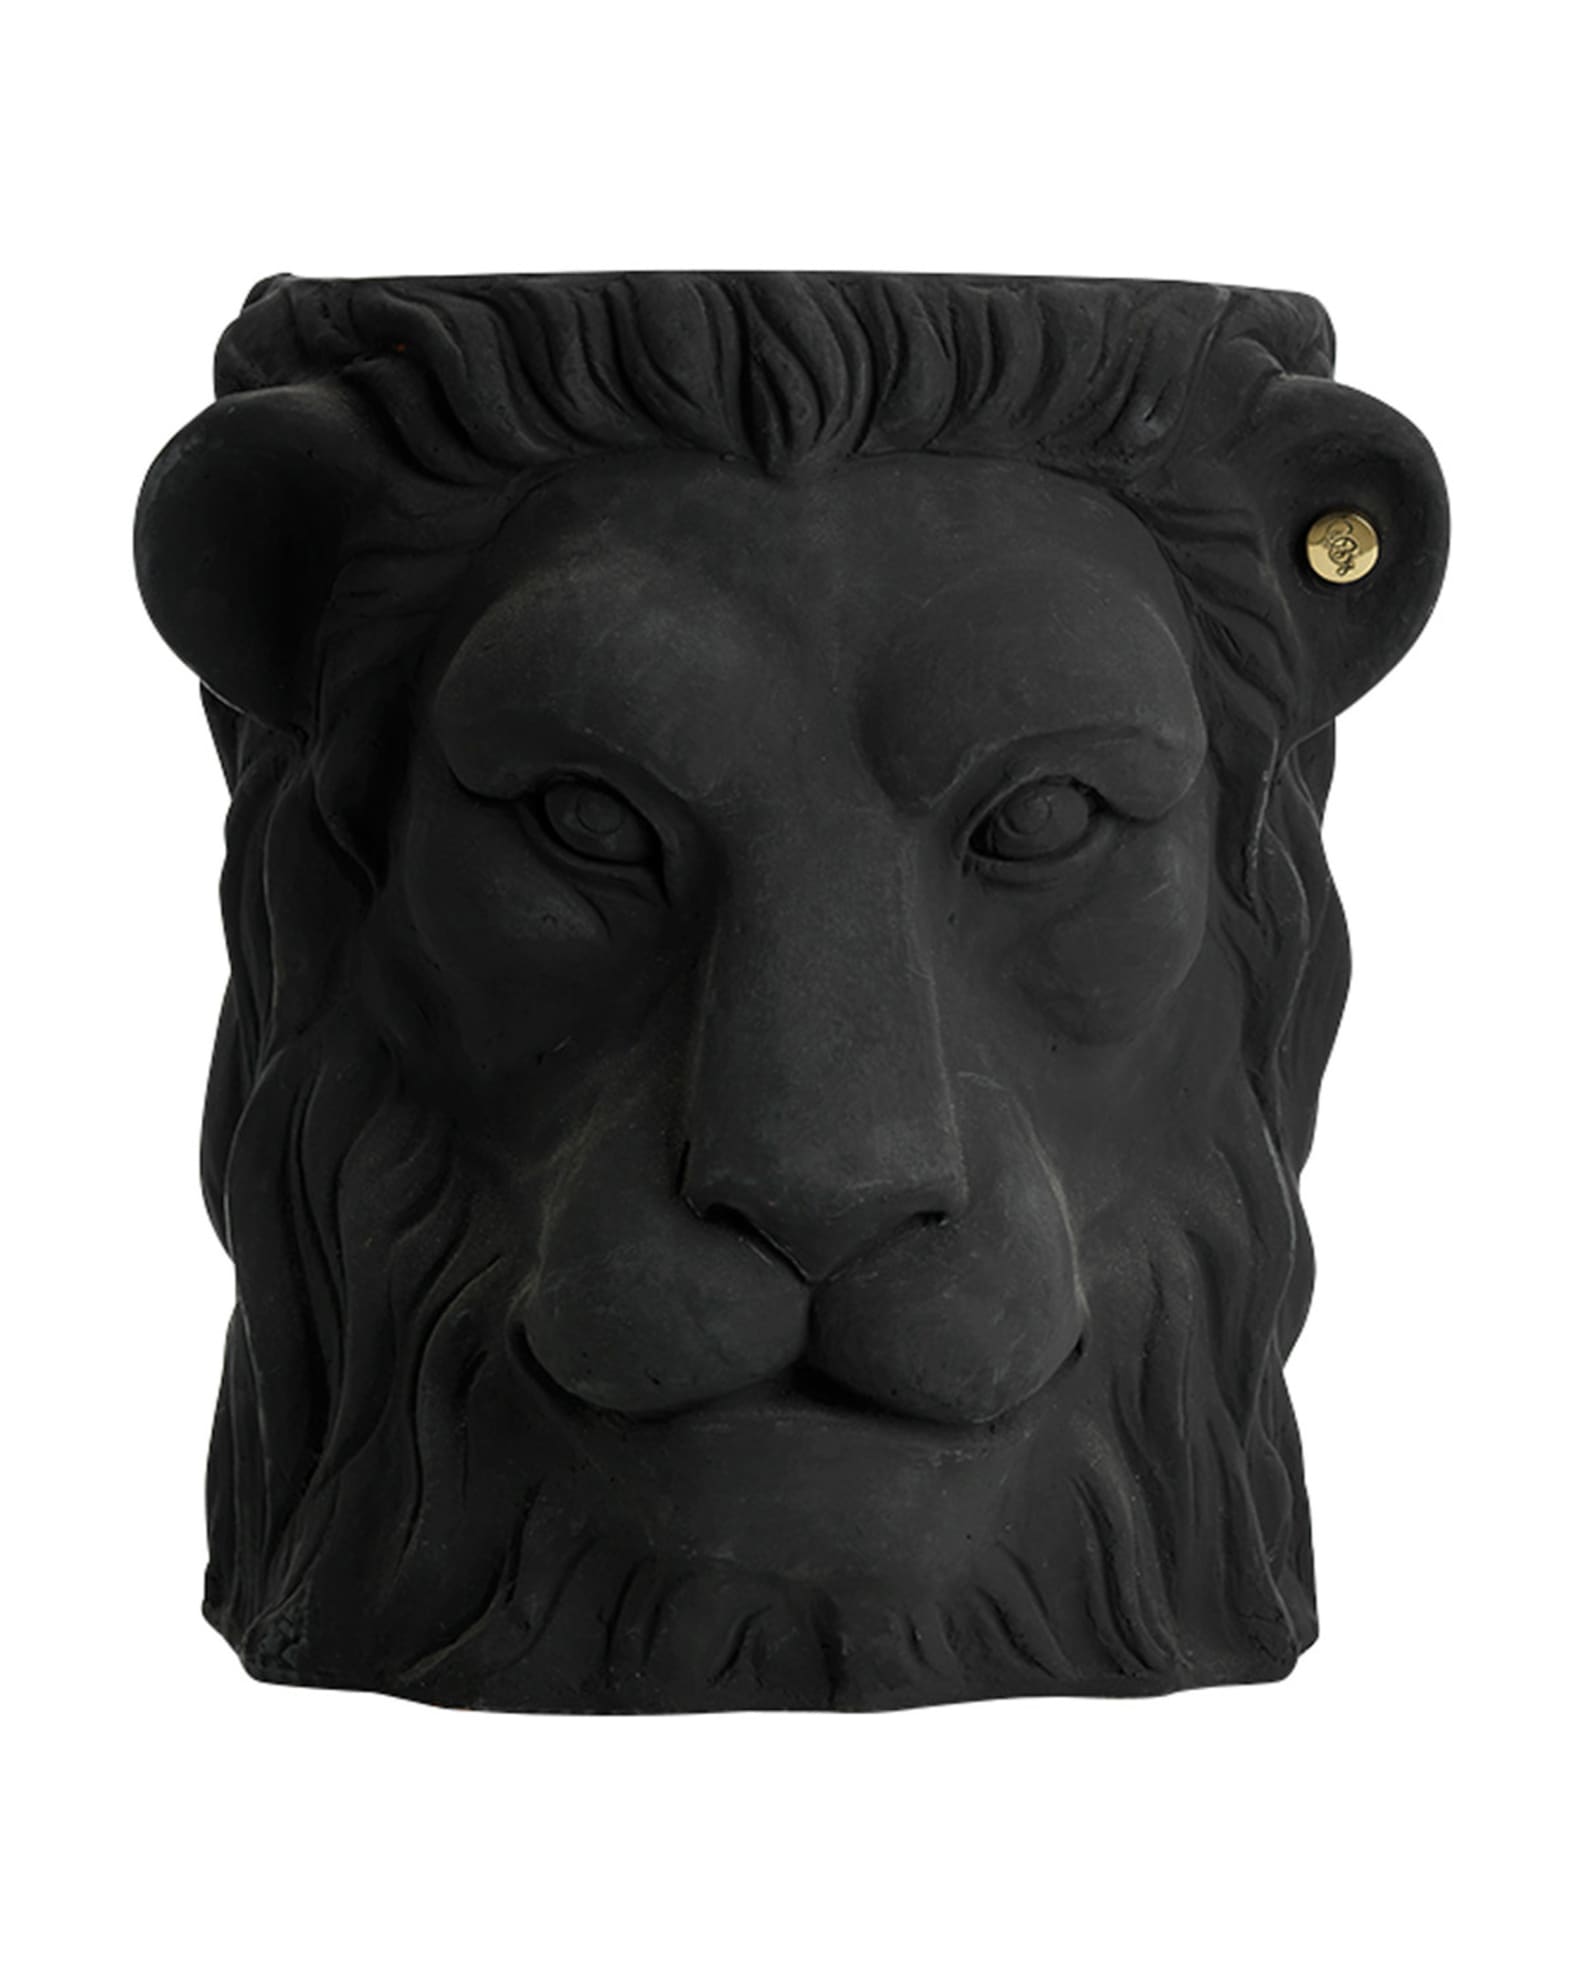 Big Lion Face Pot | Neiman Marcus